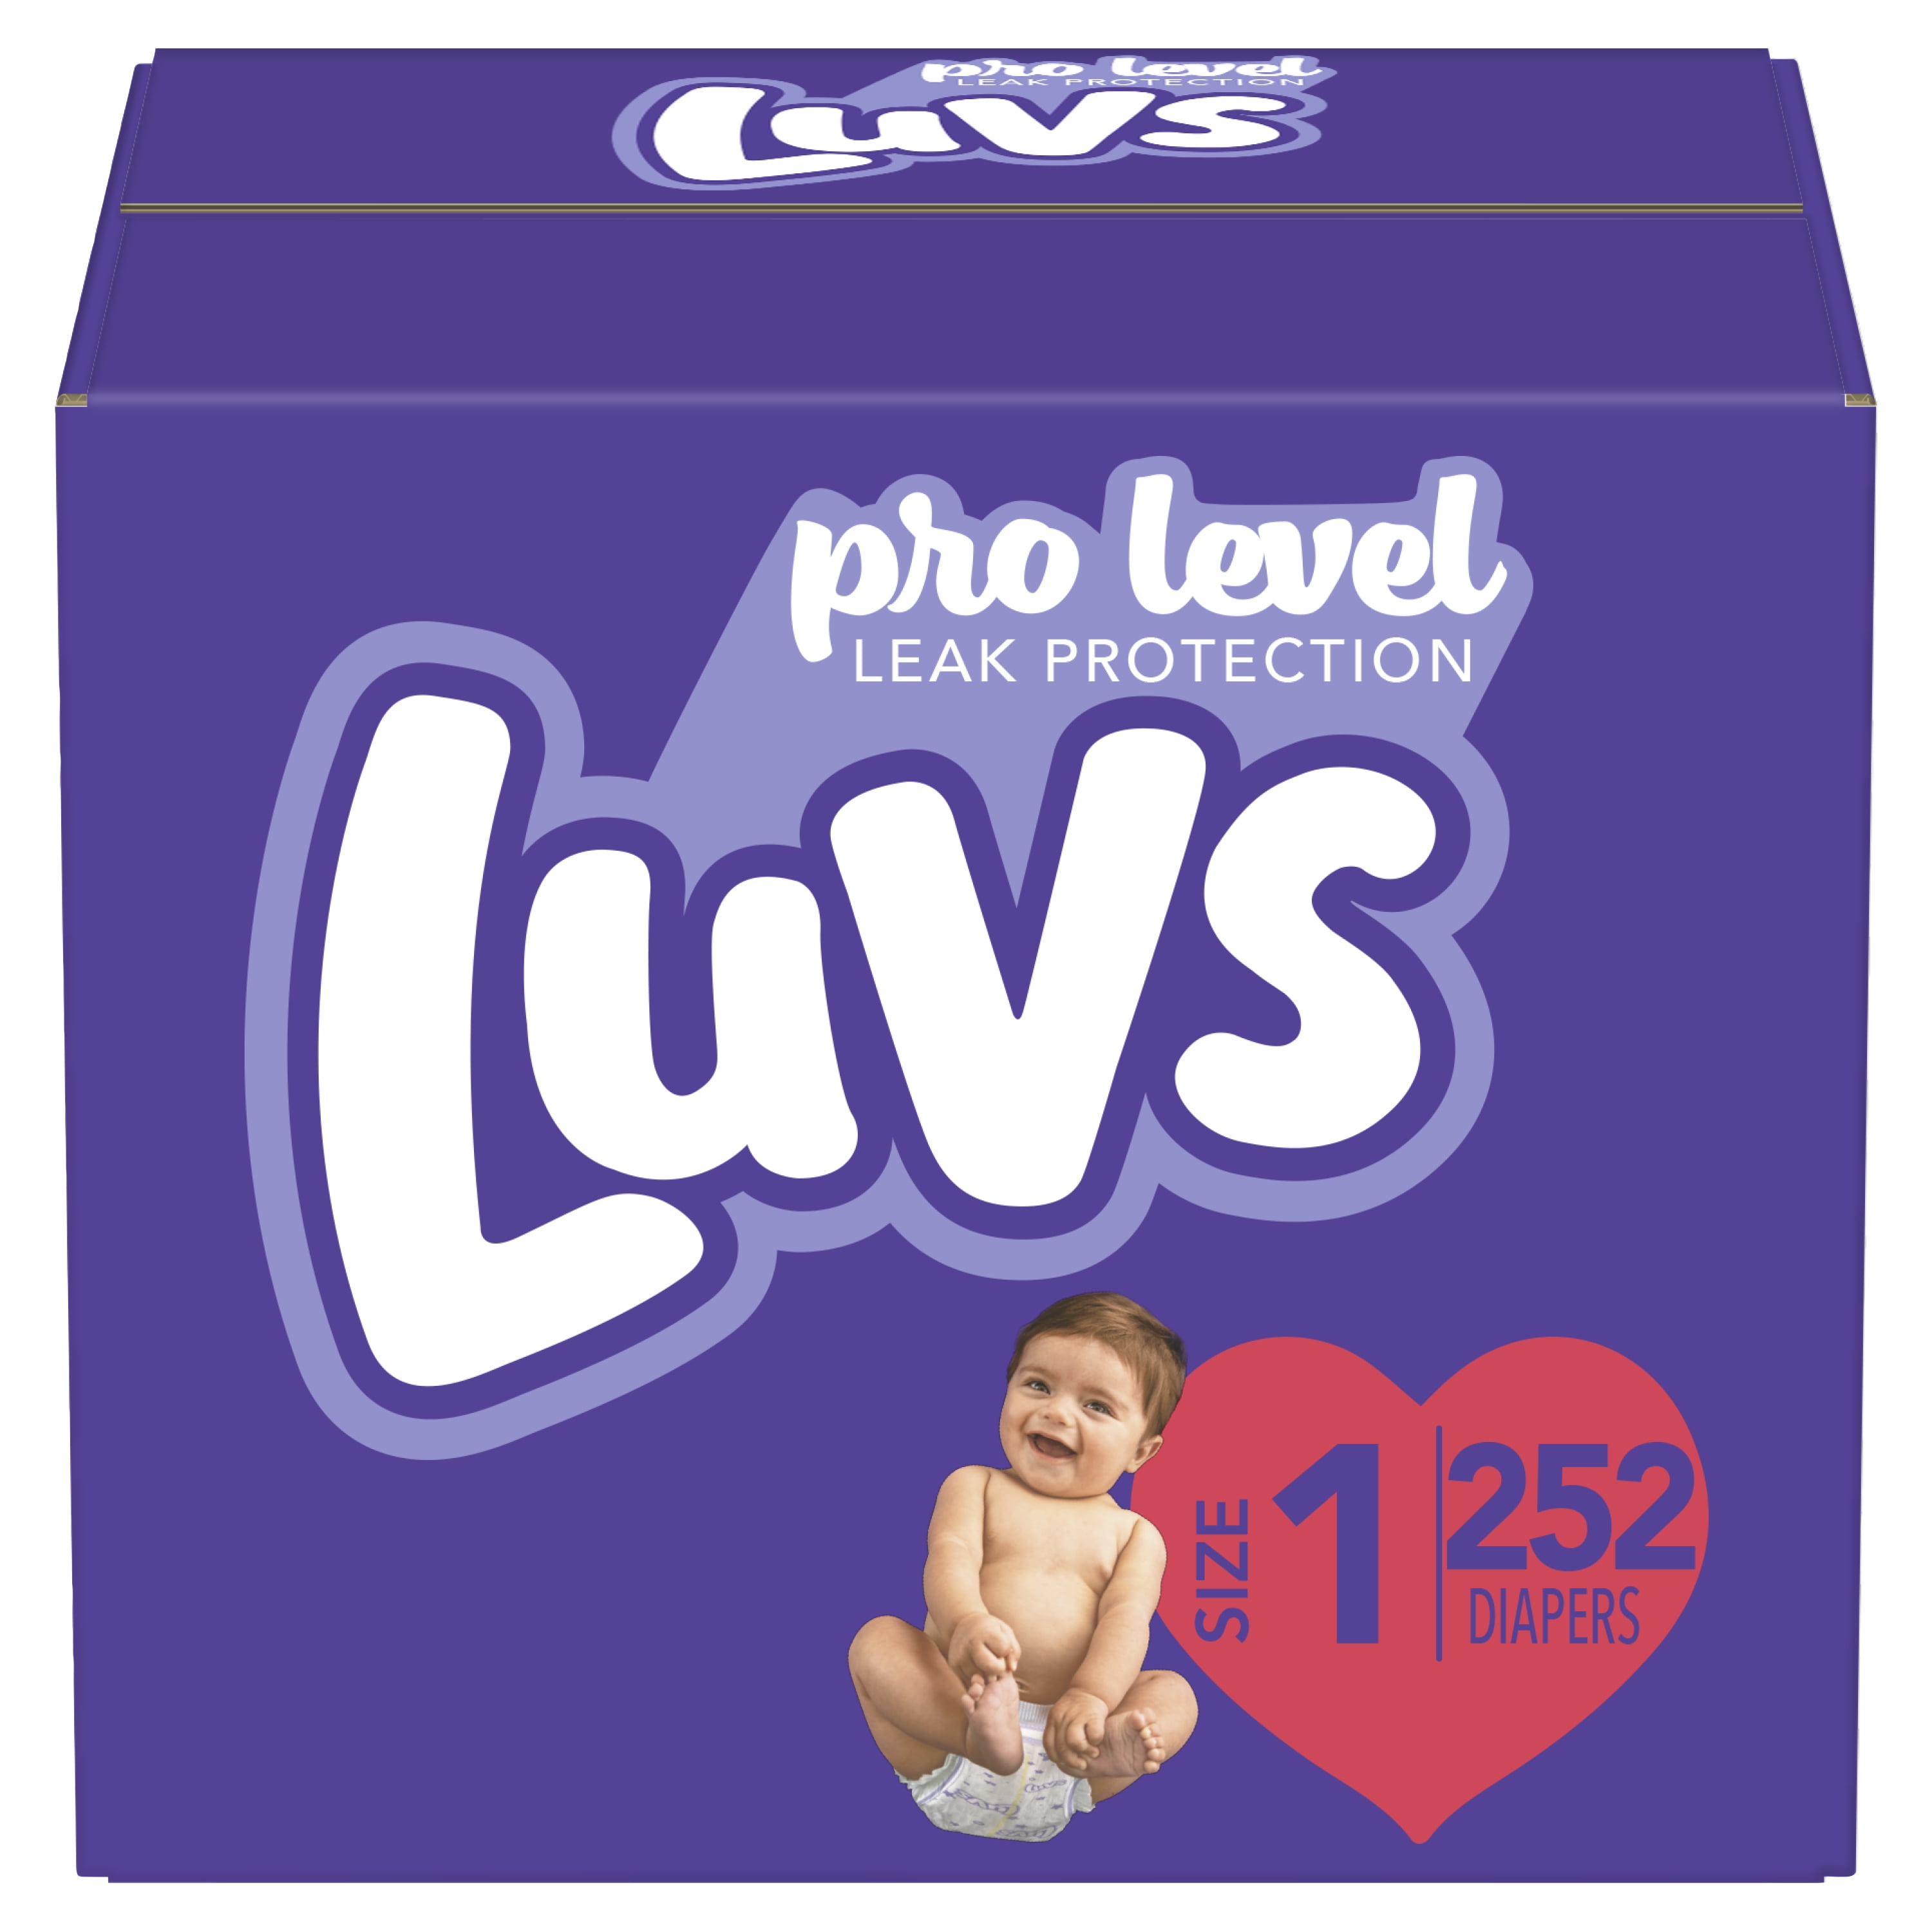 Helder op Ontkennen Piraat Luvs Pro Level Leak Protection Diapers, Size 1, 252 Count - Walmart.com